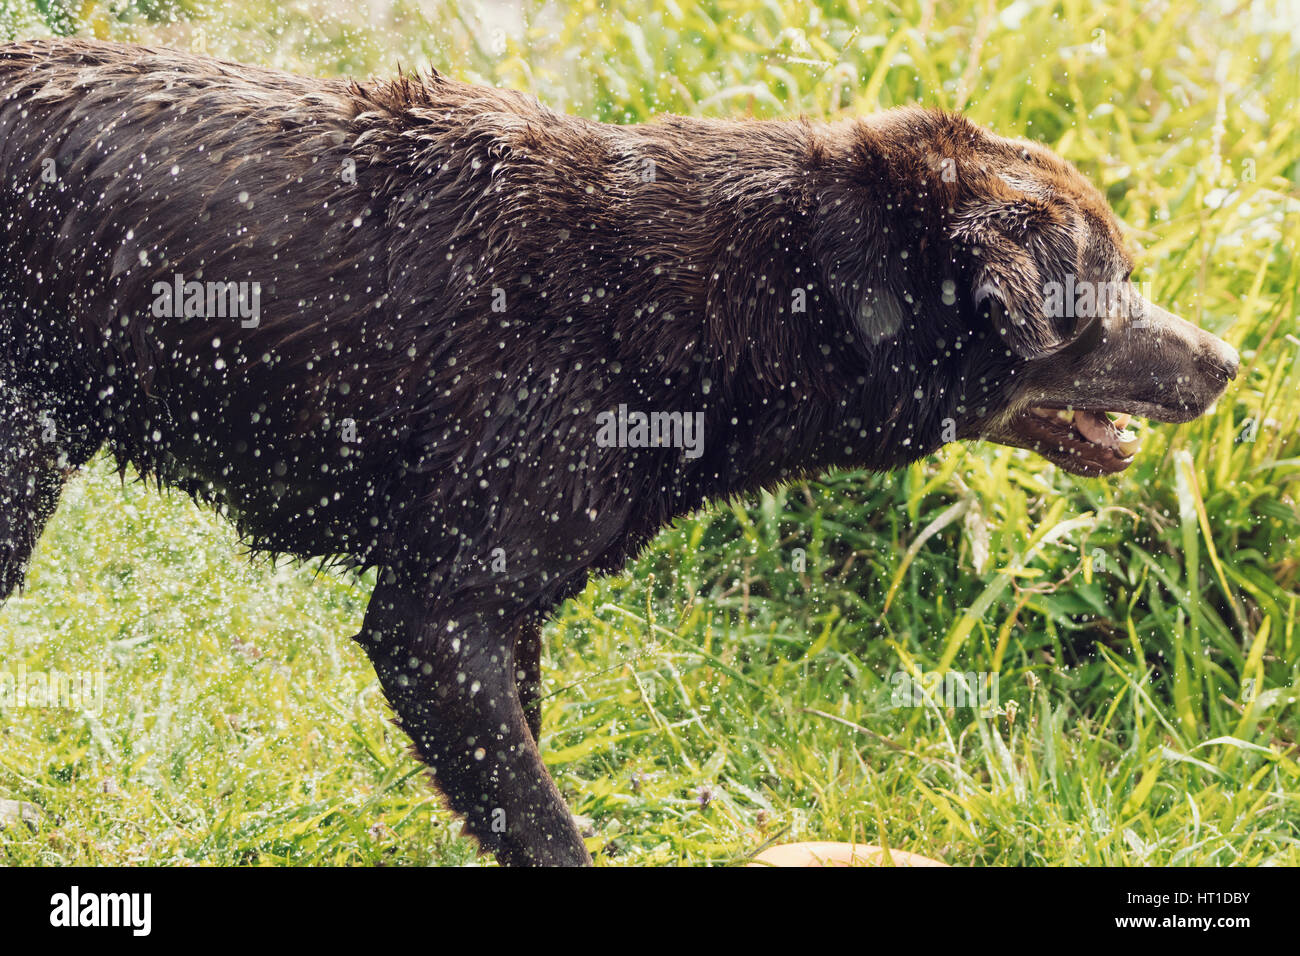 Una serie di immagini con un adulto Labrador Retriever cane di scuotimento di gocce di acqua di lui dopo una nuotata, con le gocce di acqua brilla sotto la luce diretta del sole. Foto Stock